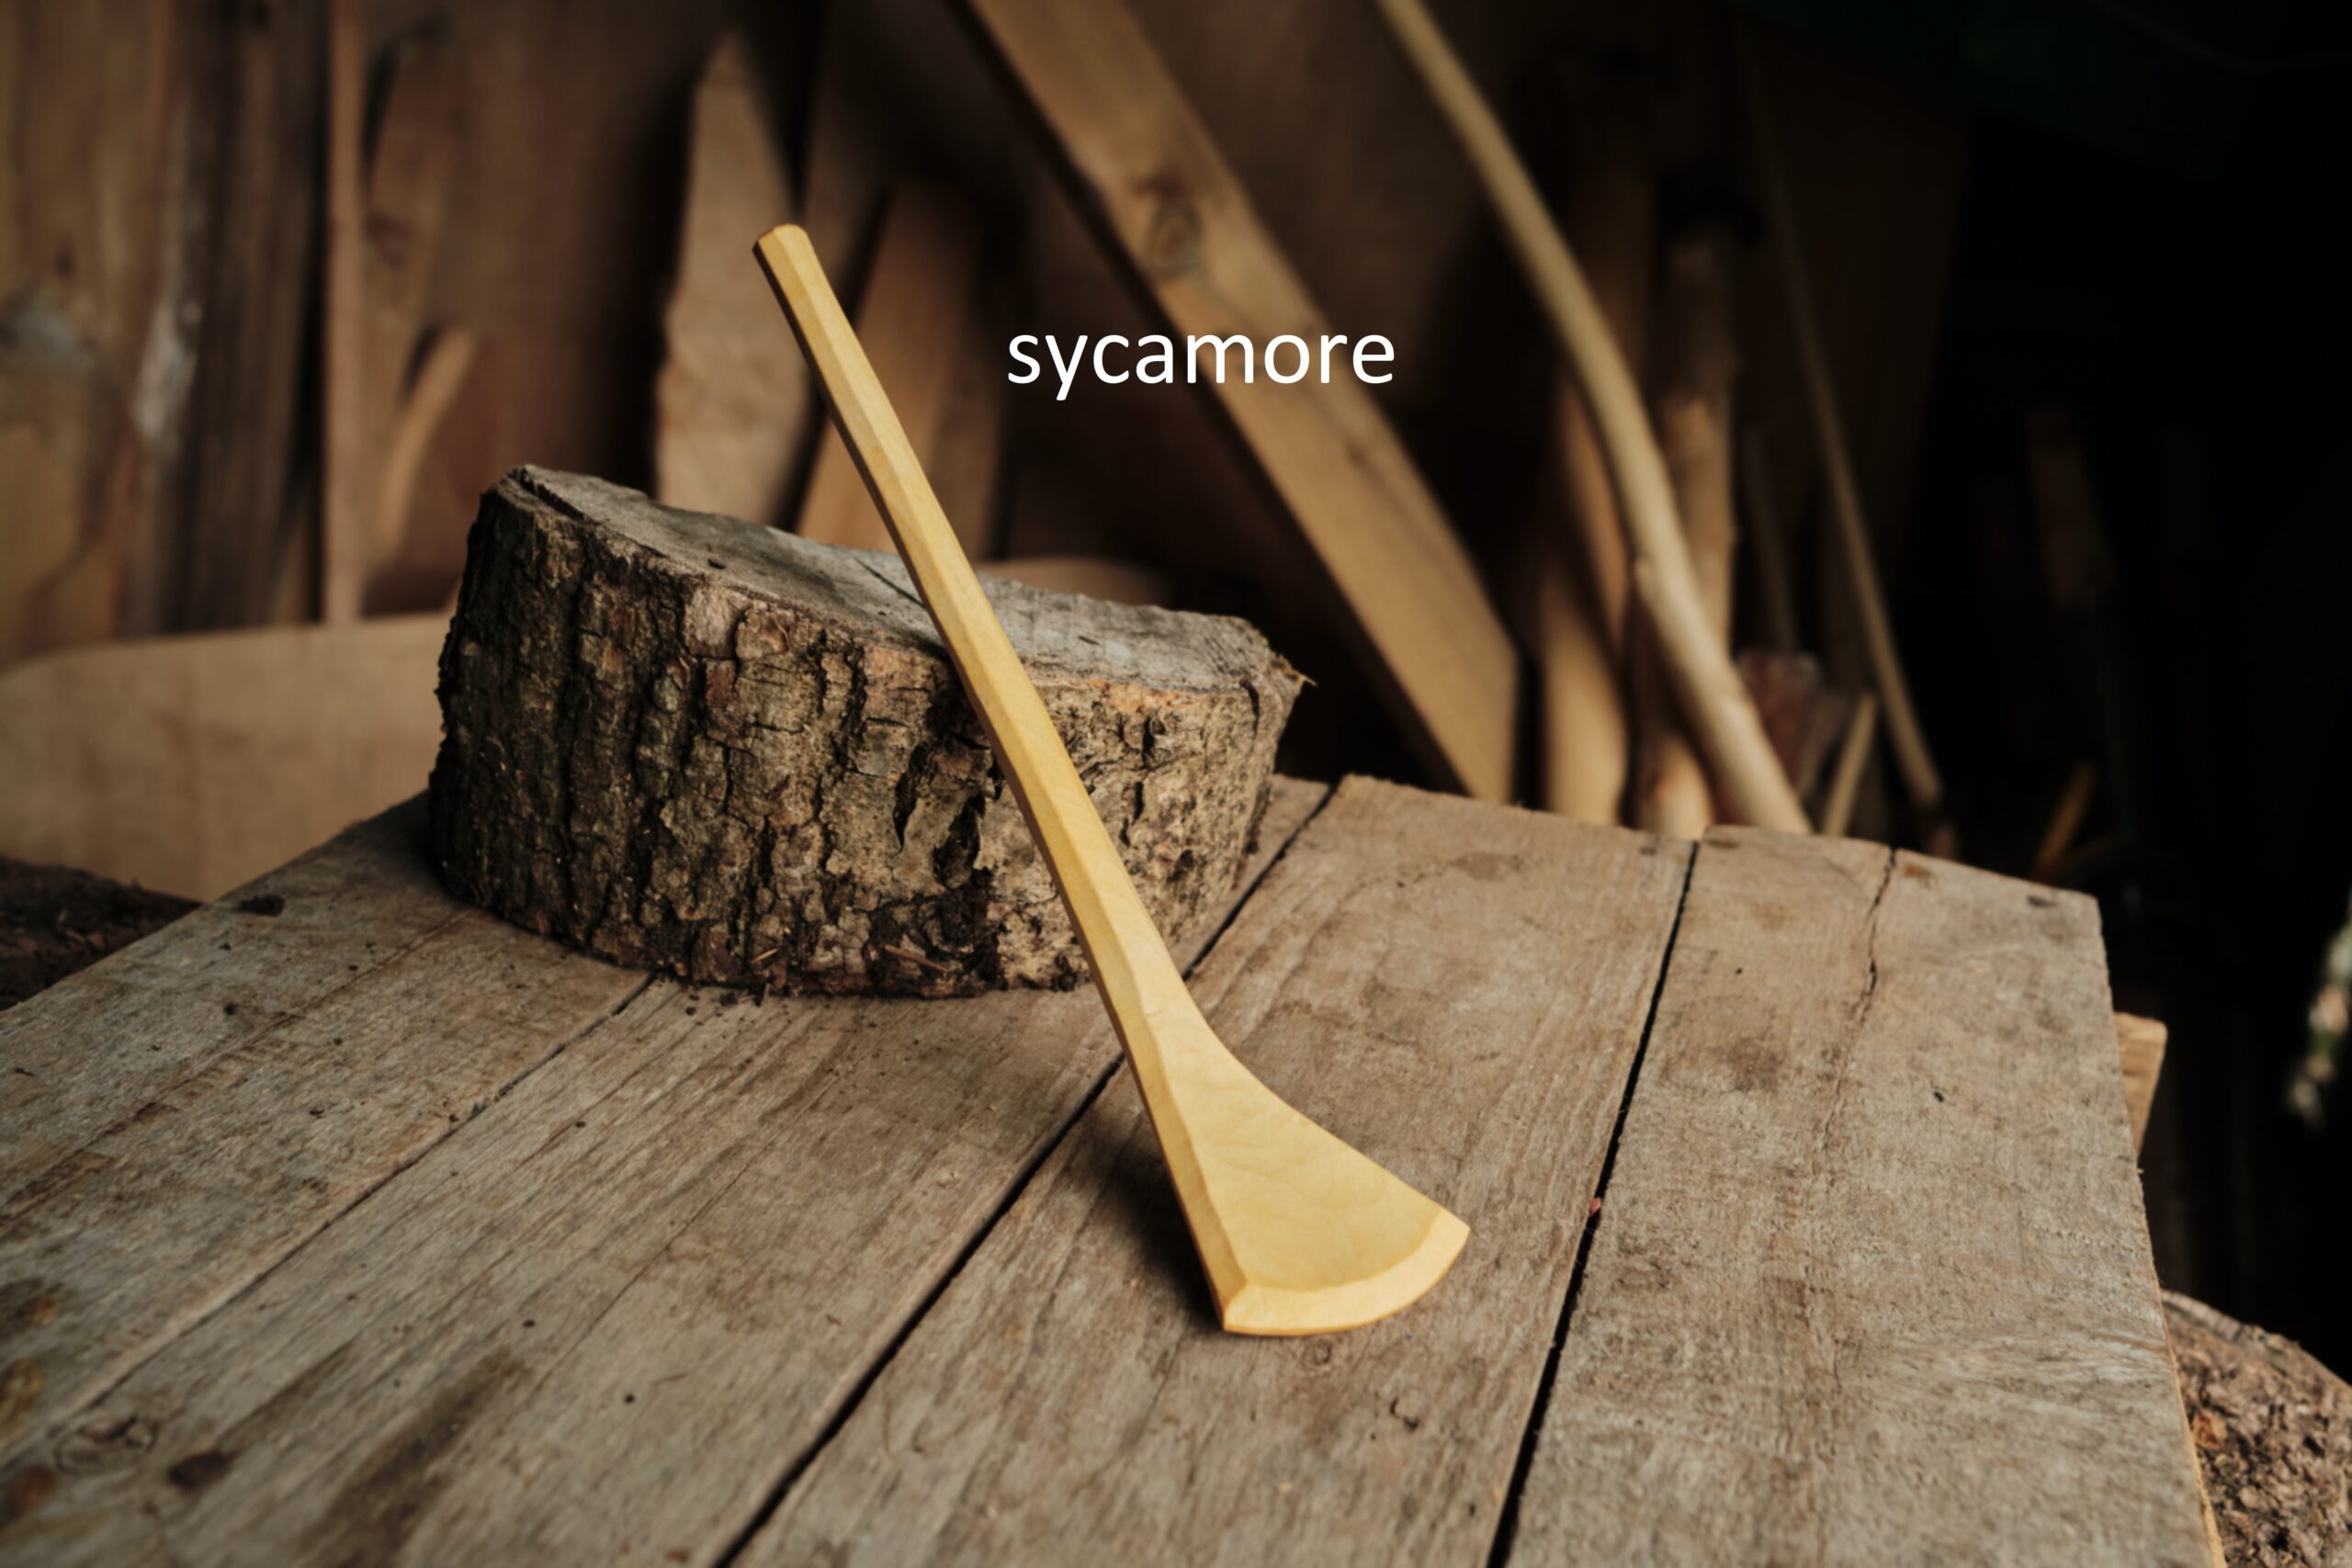 Small sycamore spatula